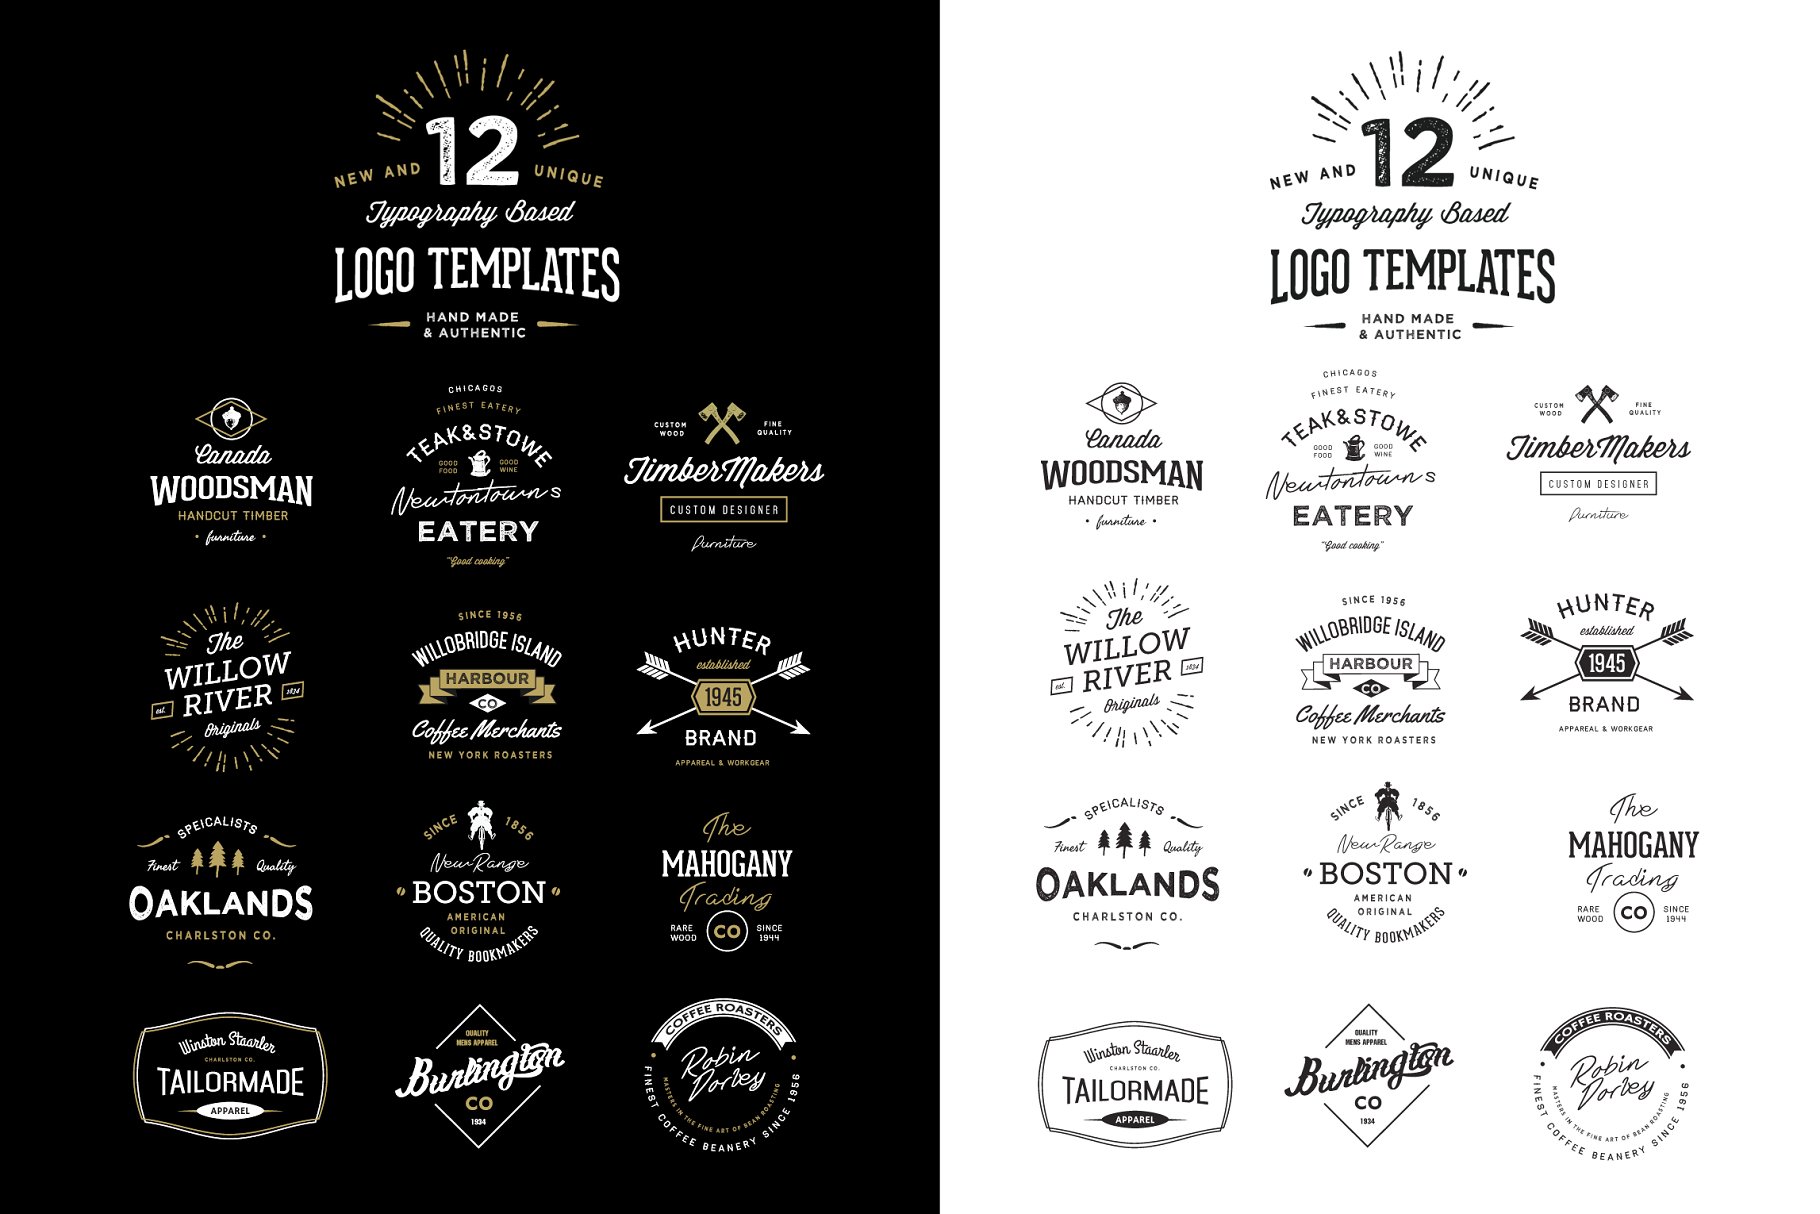 12款复古怀旧风格排版Logo模板 12 Typography Based Vintage Logos插图1